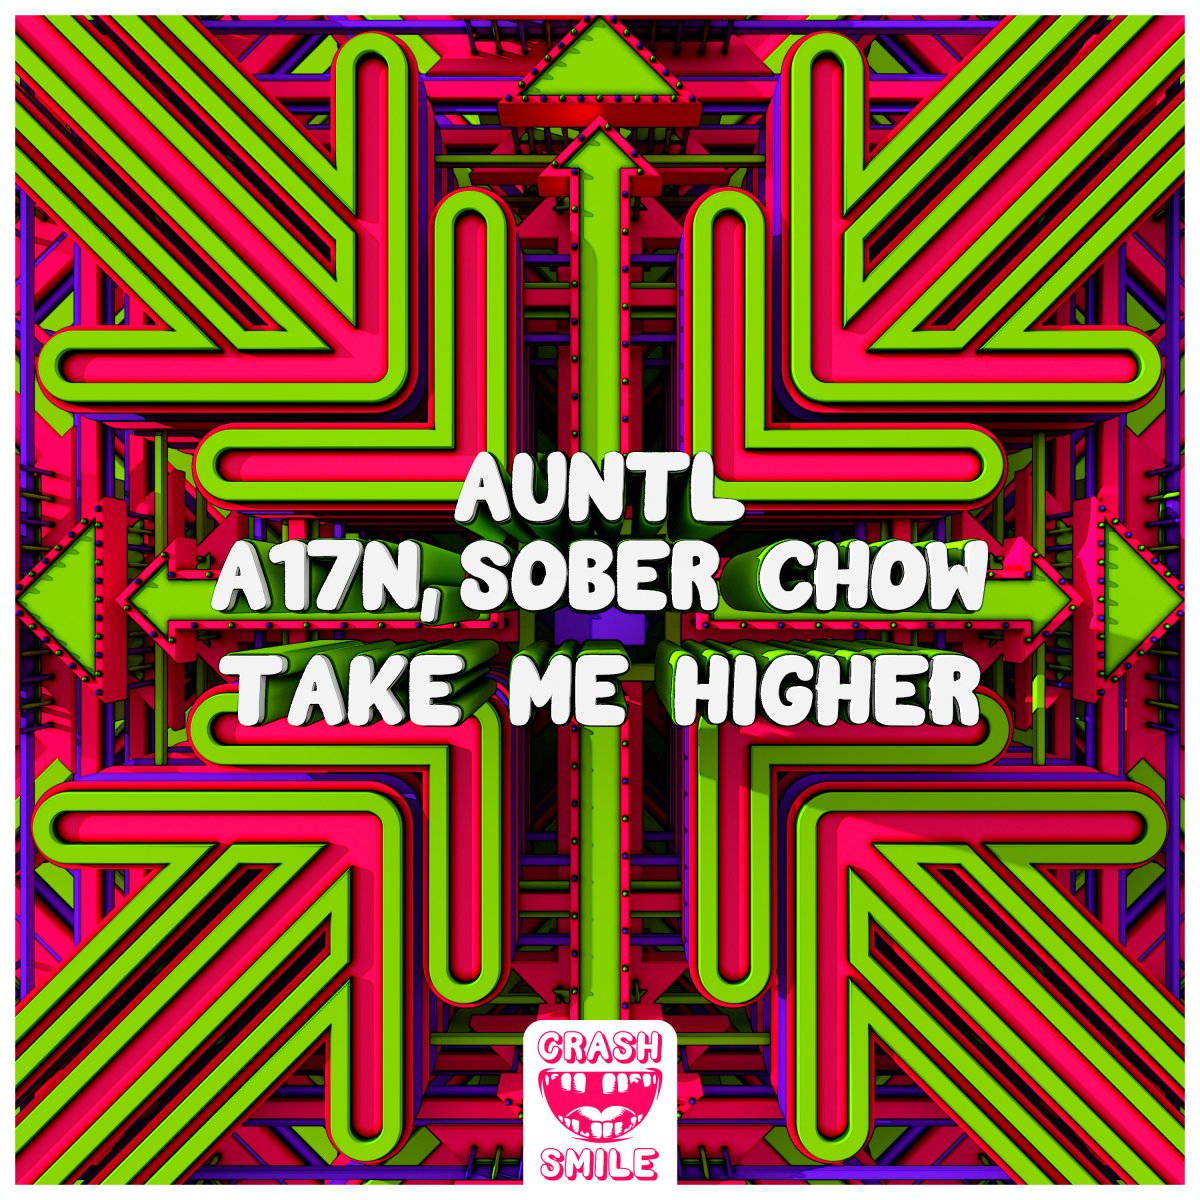 Take Me Higher - AuntL⁠, A17N⁠ & Sober Chow⁠ 